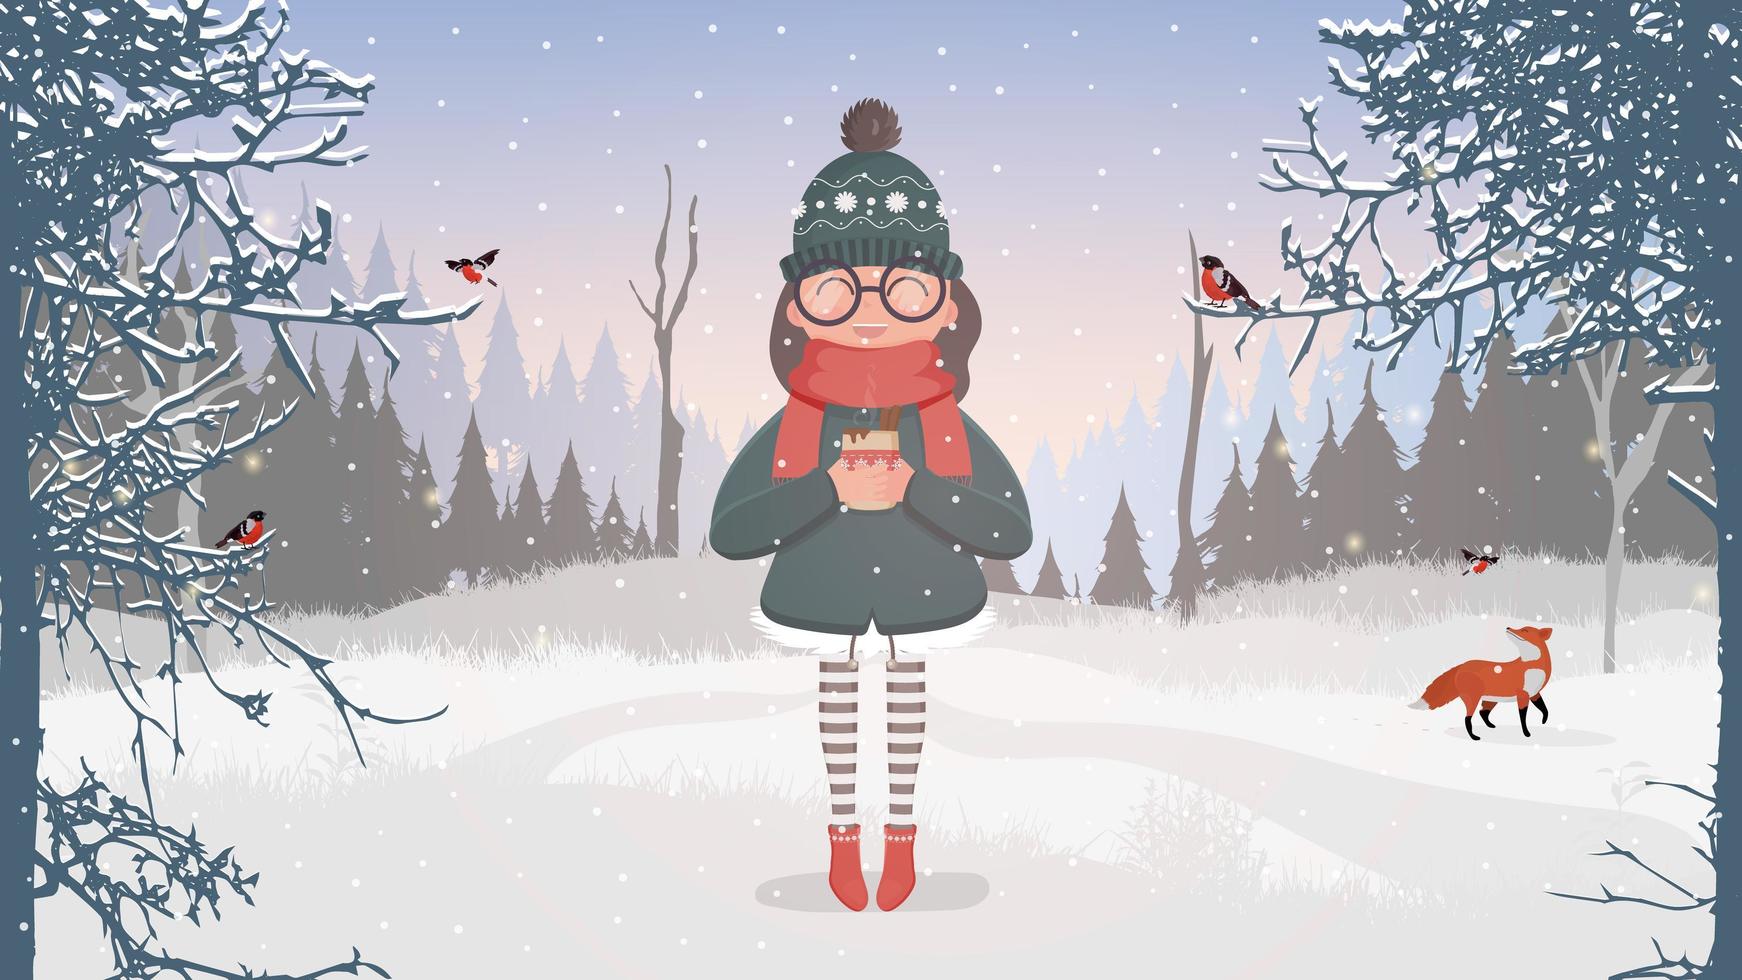 una donna con vestiti caldi e occhiali invernali tiene una tazza tra le mani. una ragazza in un bosco innevato beve una bevanda calda. cartolina già pronta per un tema invernale. illustrazione vettoriale. vettore